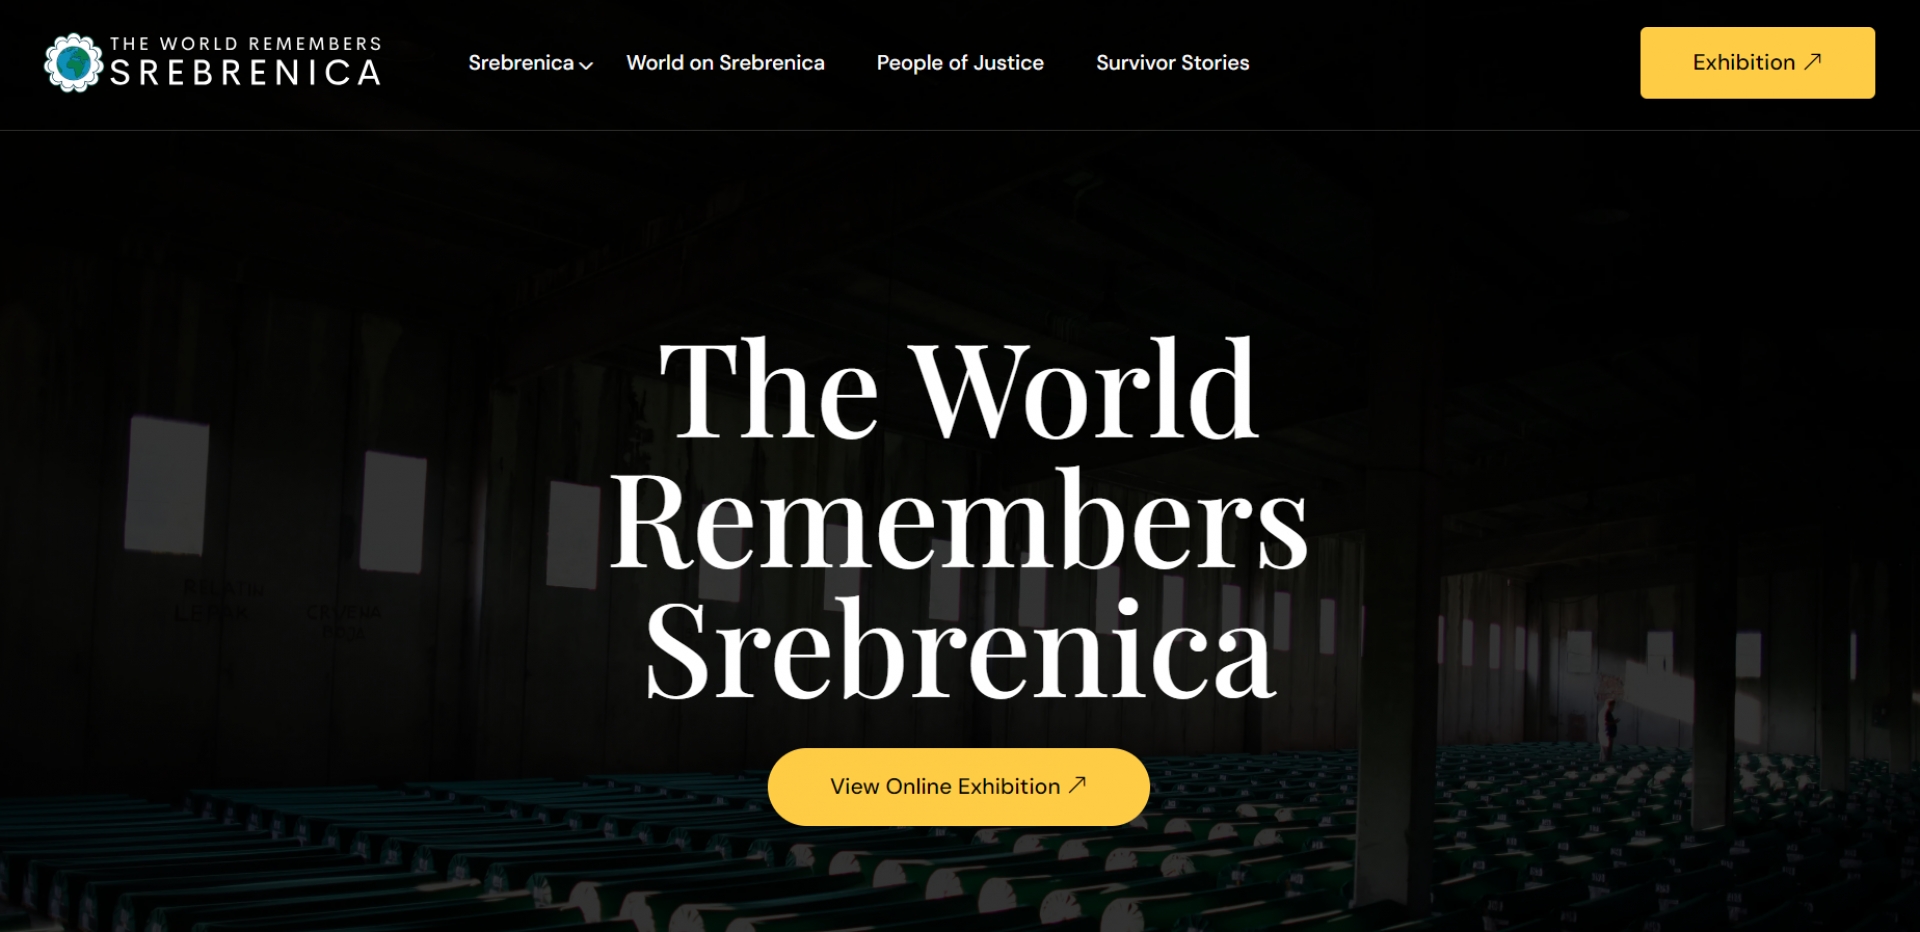 Svijet pamti Srebrenicu: Svi imamo obavezu raditi na širenju istine o Srebrenici